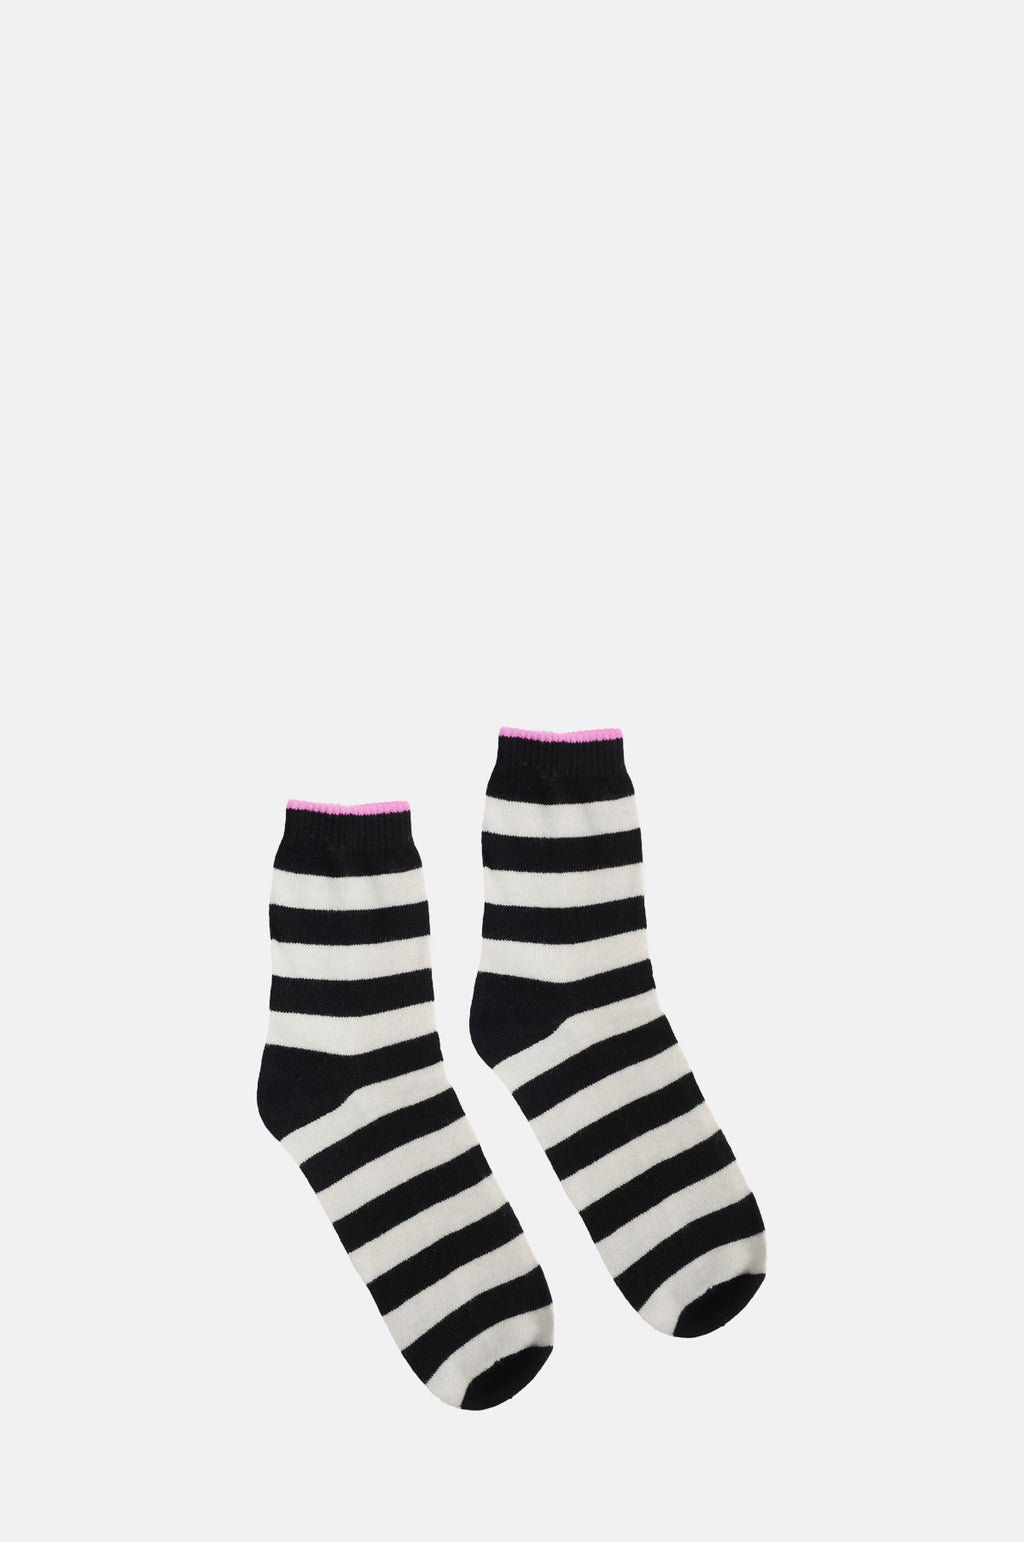 The Jumper 1234 Stripe Socks in black marble.